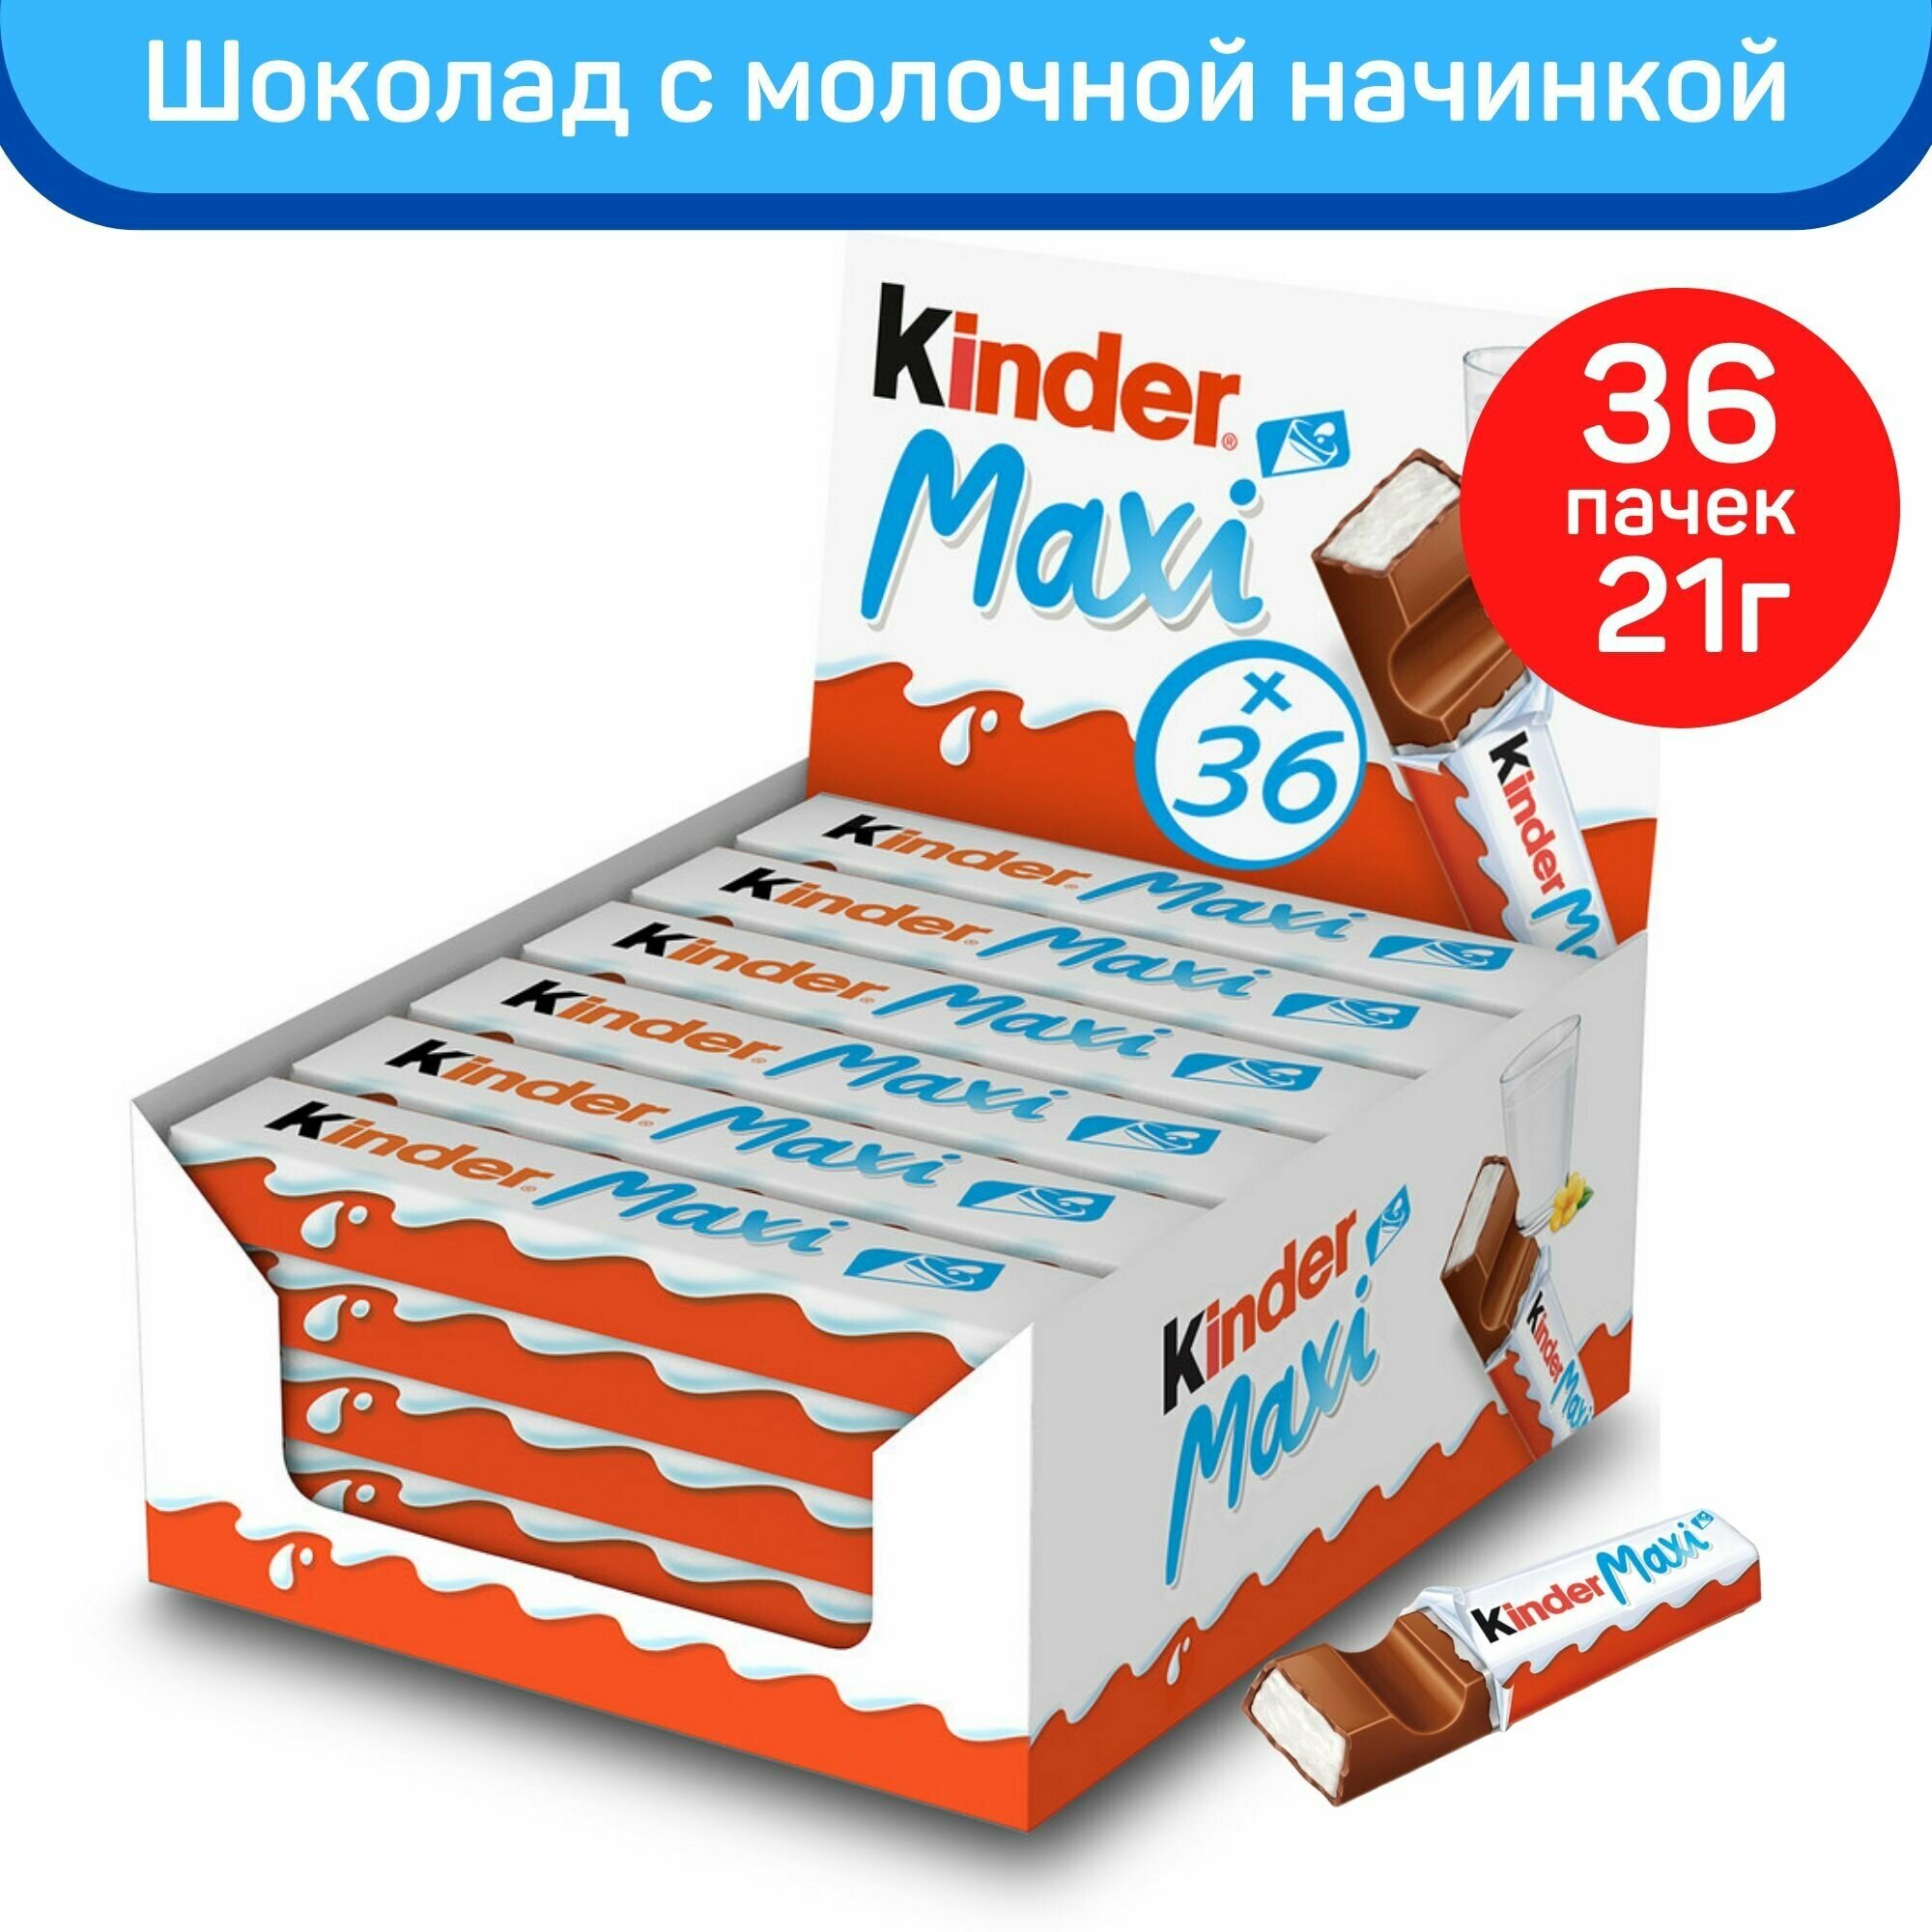 Шоколад молочный Kinder Макси с молочной начинкой, 36шт. по 21г.